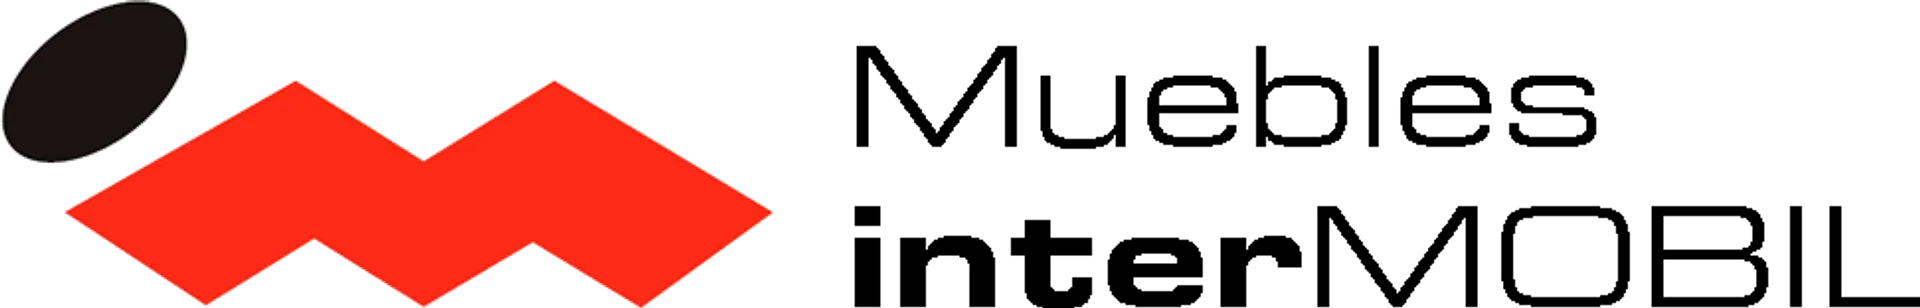 INTERMOBIL logo de catálogo